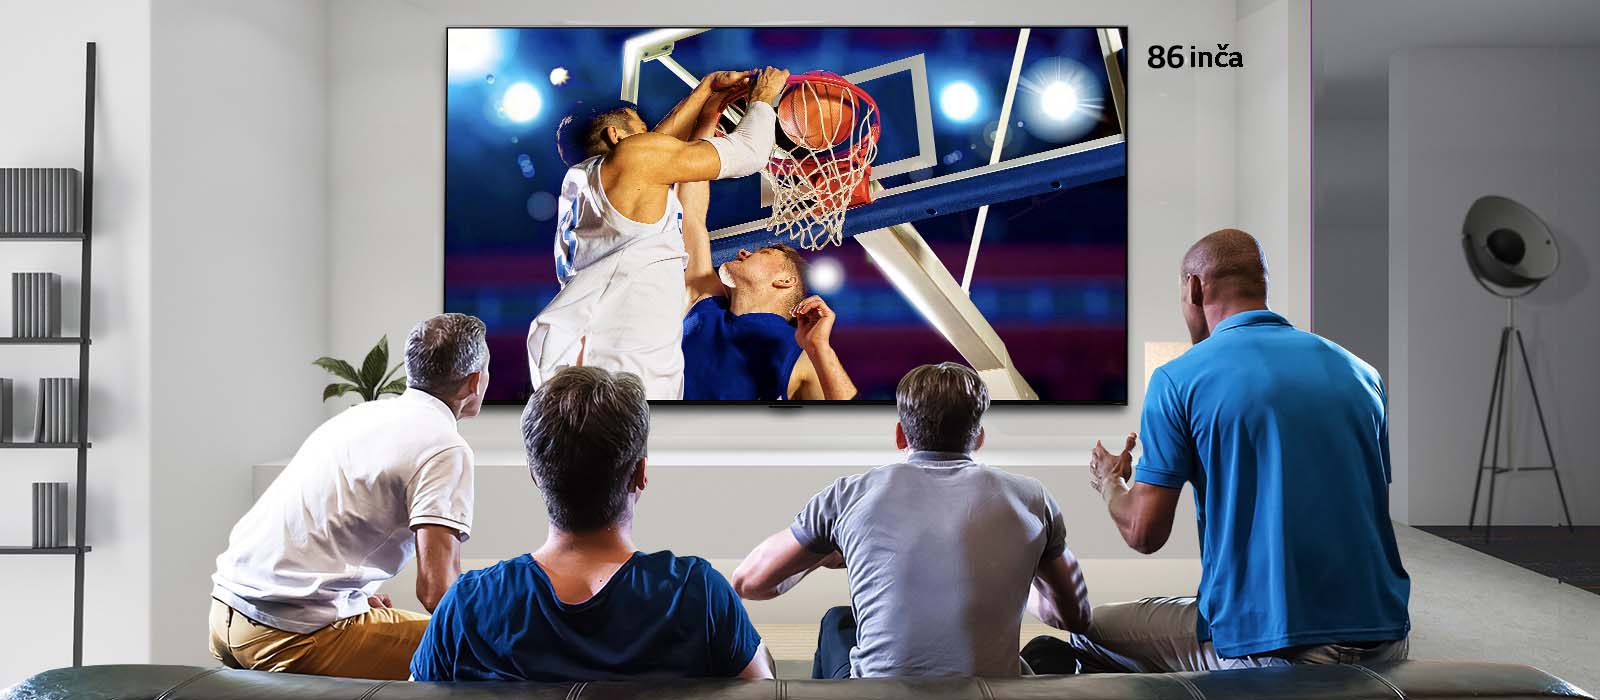 Prikaz sa zadnje strane televizora montiranog na zid, na kome je prikazana košarkaška utakmica koju gledaju četiri muškarca. Listanje sleva nadesno prikazuje razliku u veličini između 43-inčnog i 86-inčnog ekrana.